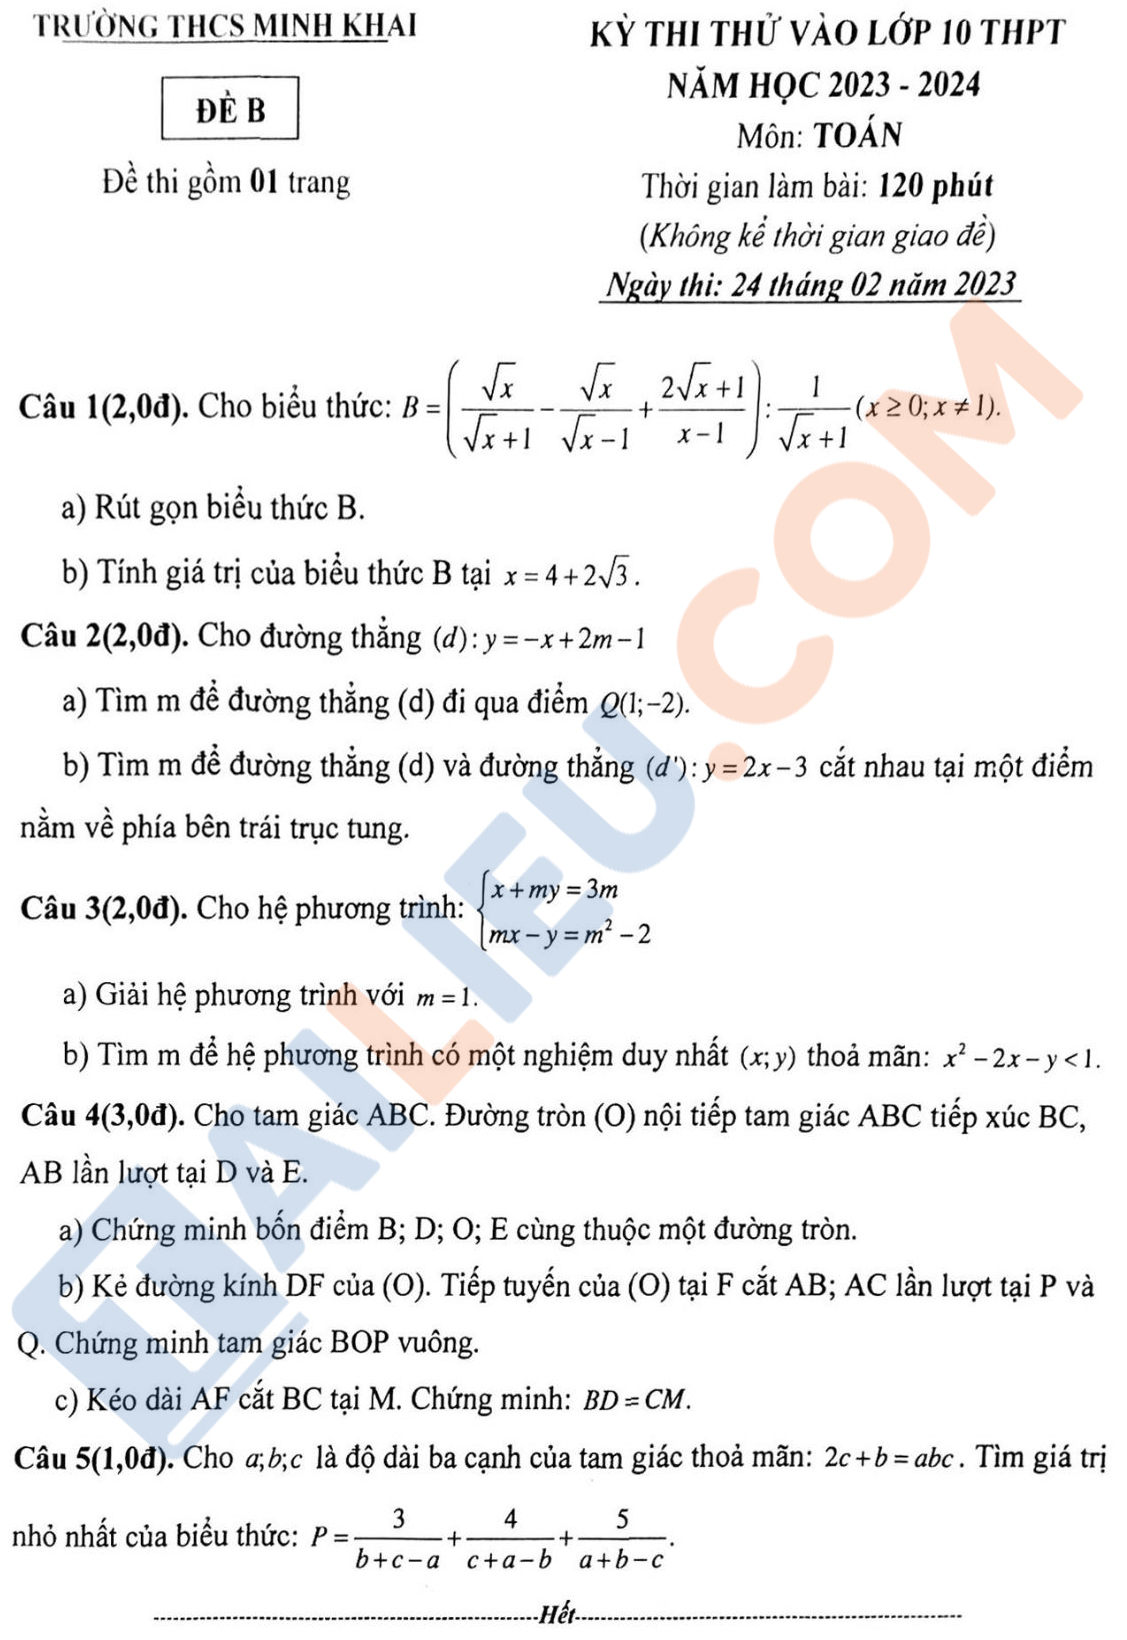 Đề thi thử vào lớp 10 môn Toán năm 2023 - 2024 trường THCS Minh Khai - Hà Nội